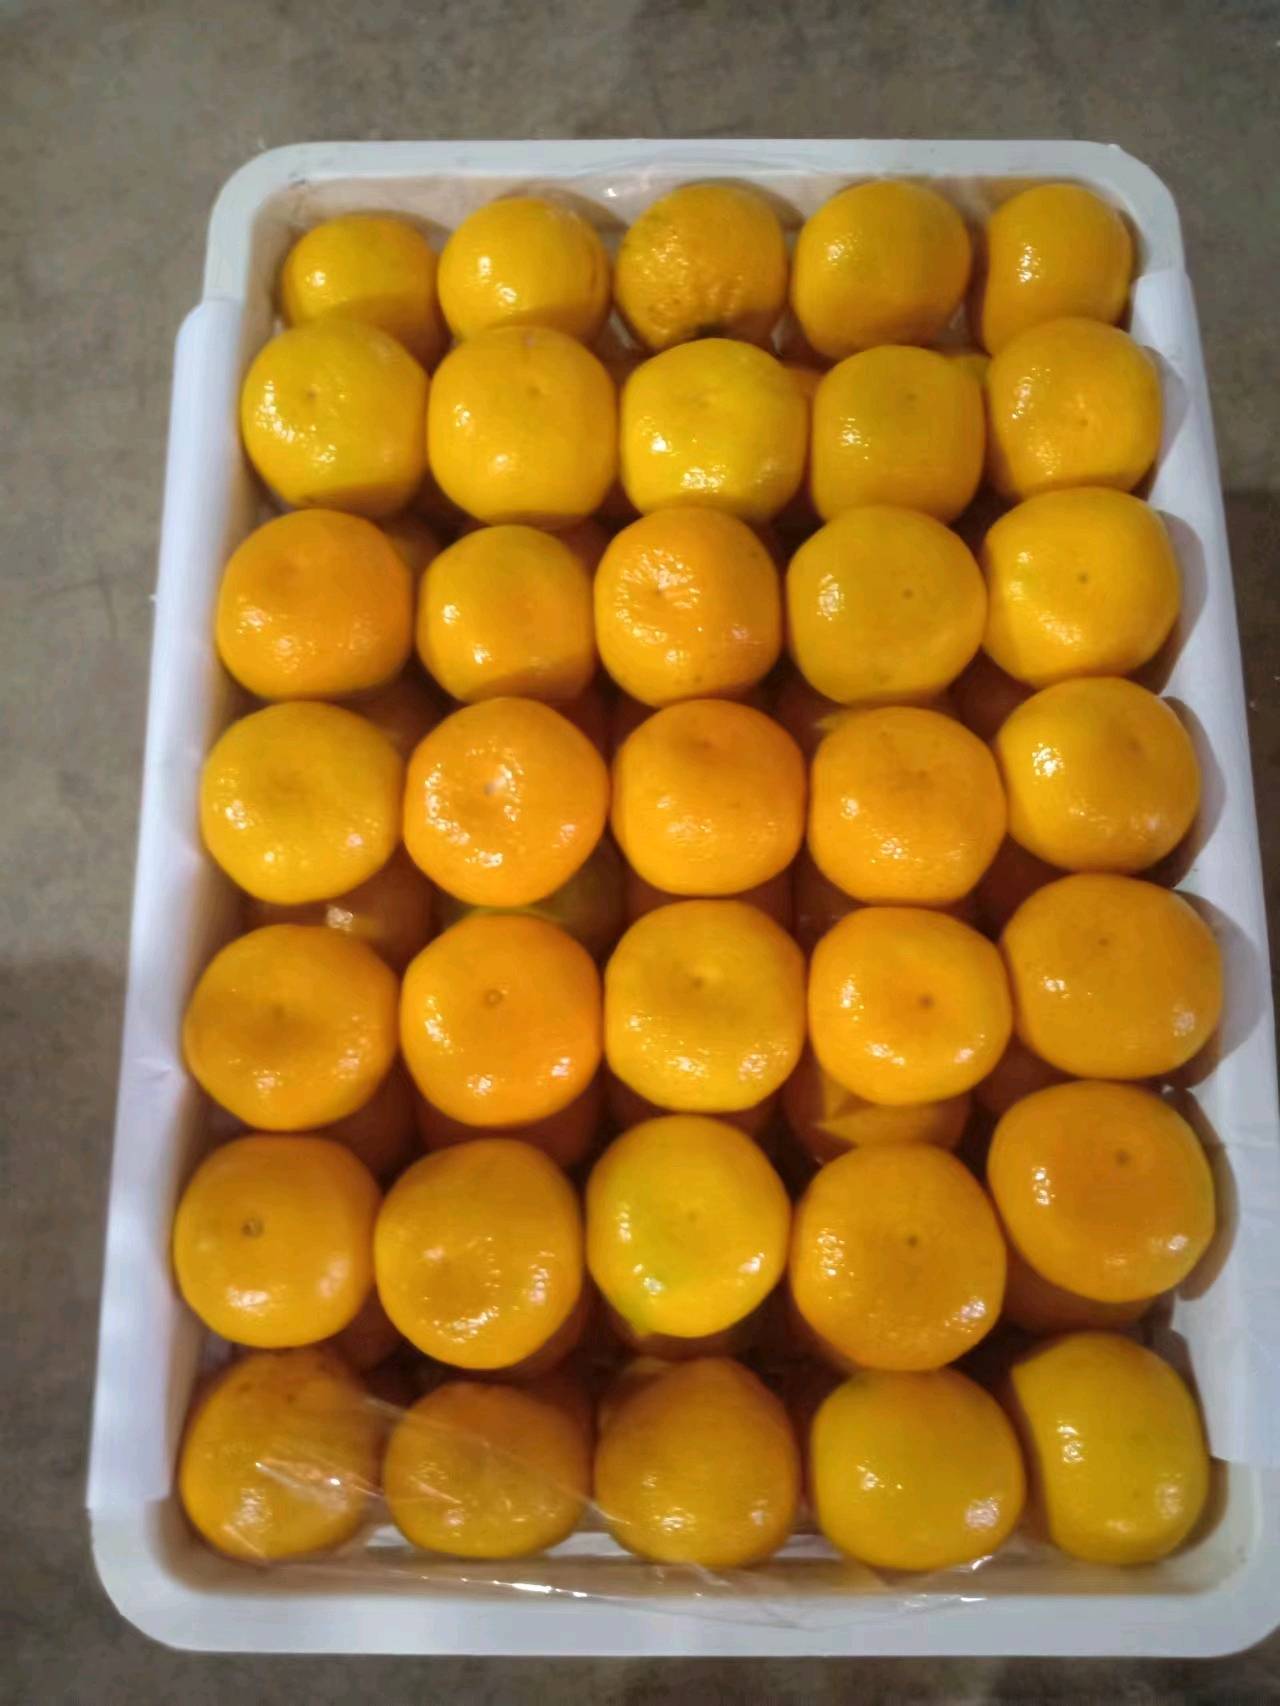 湖北特早蜜桔柚子爱媛果冻橙品种多个大皮薄肉厚囗感甜欢迎新老客户前来采购